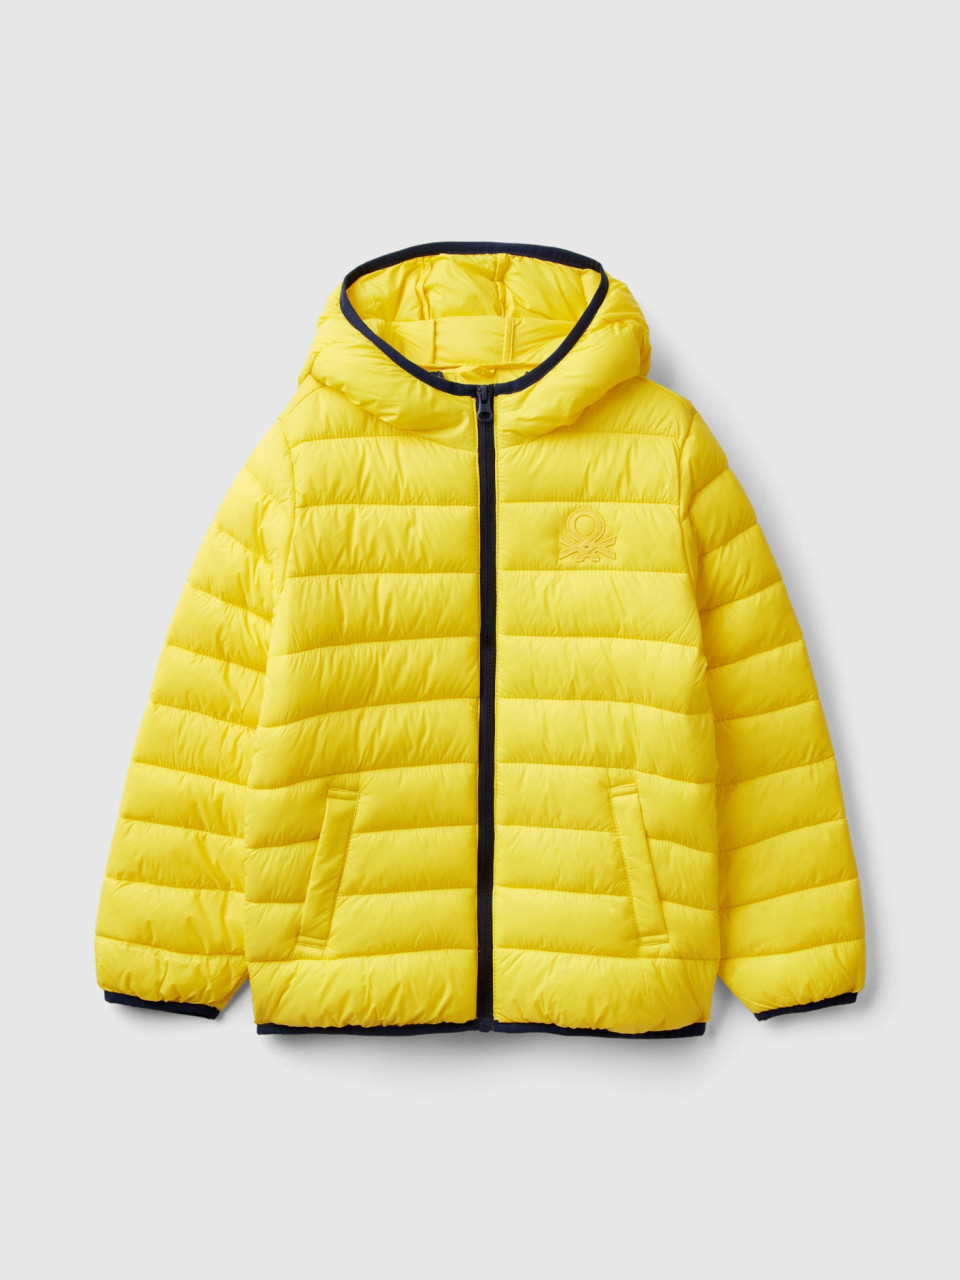 Benetton, Padded Jacket With Hood, Yellow, Kids